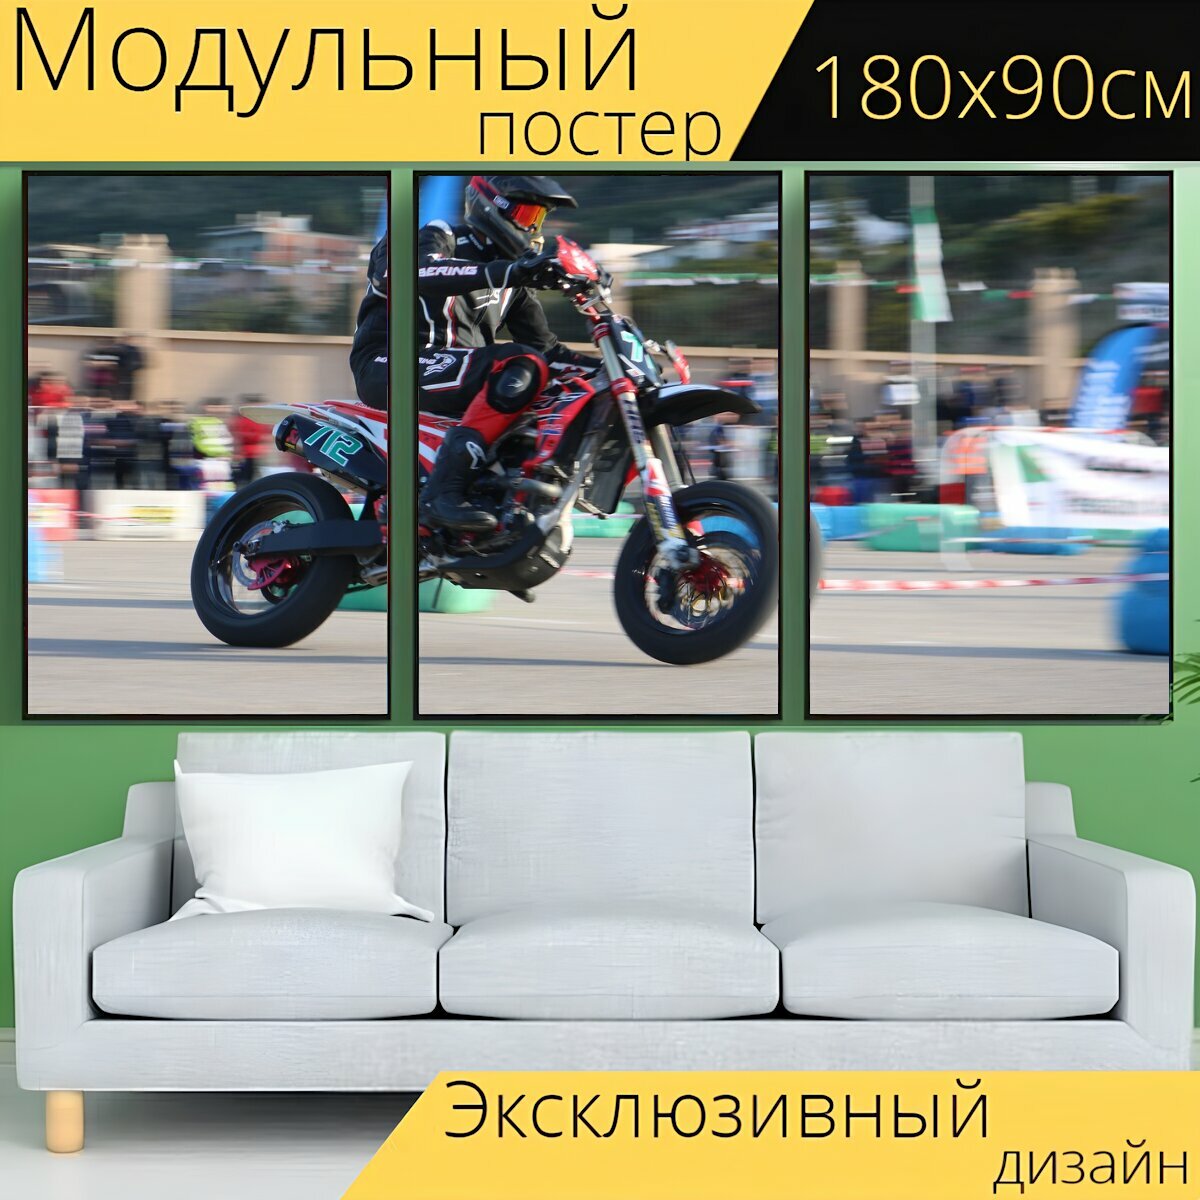 Модульный постер "Мото, мотоциклы, мотокросс" 180 x 90 см. для интерьера